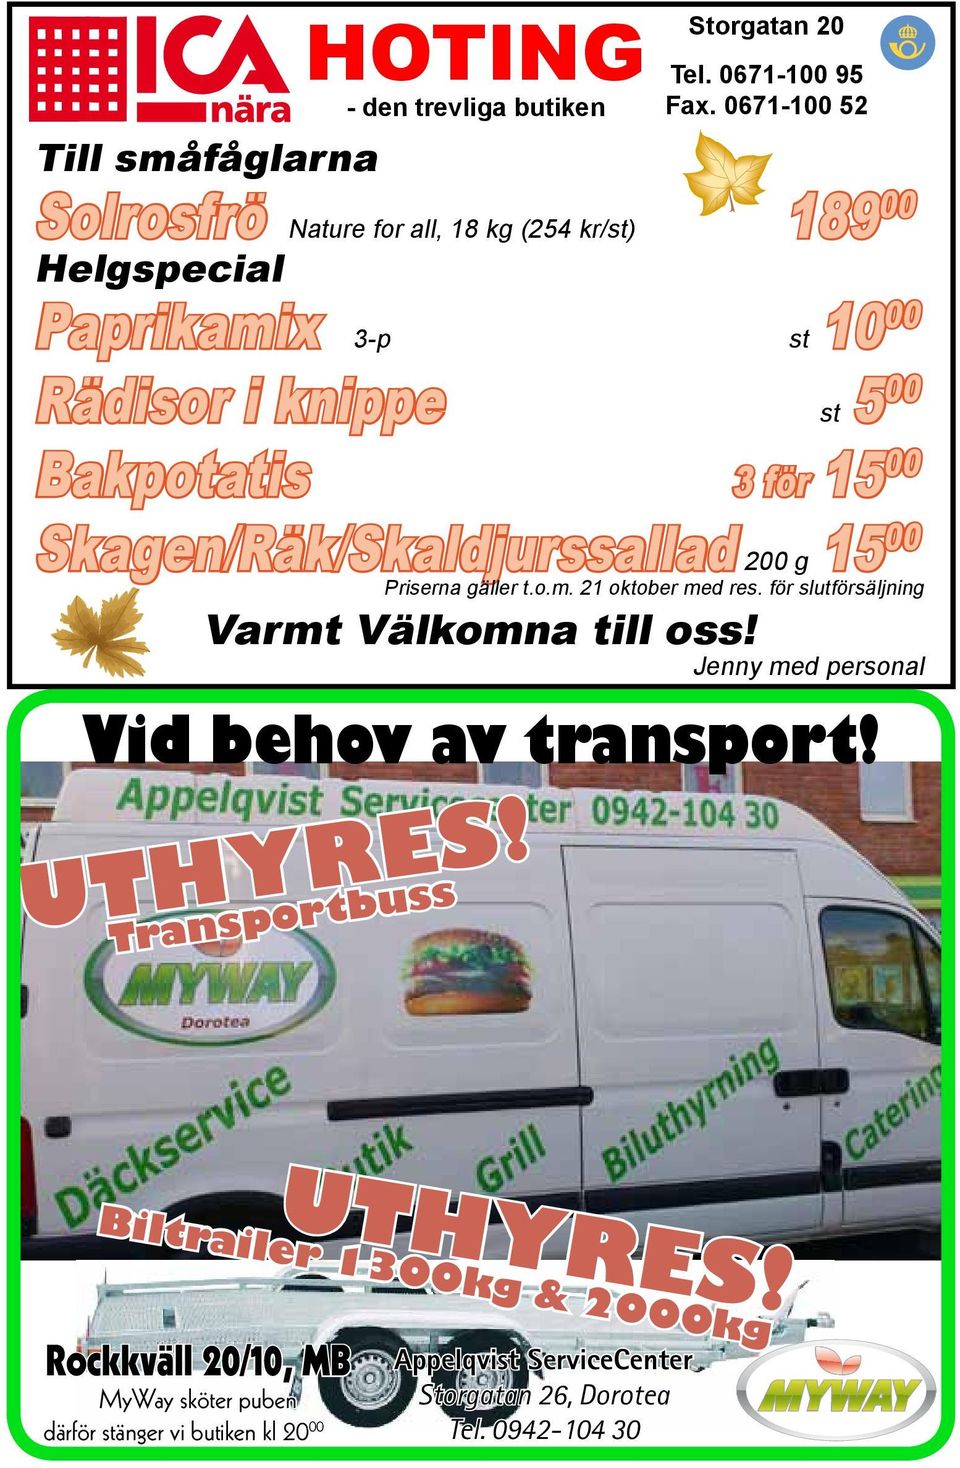 Bakpotatis 3 för 15 00 Skagen/Räk/Skaldjurssallad 200 g 15 00 Priserna gäller t.o.m. 21 oktober med res. för slutförsäljning Varmt Välkomna till oss!